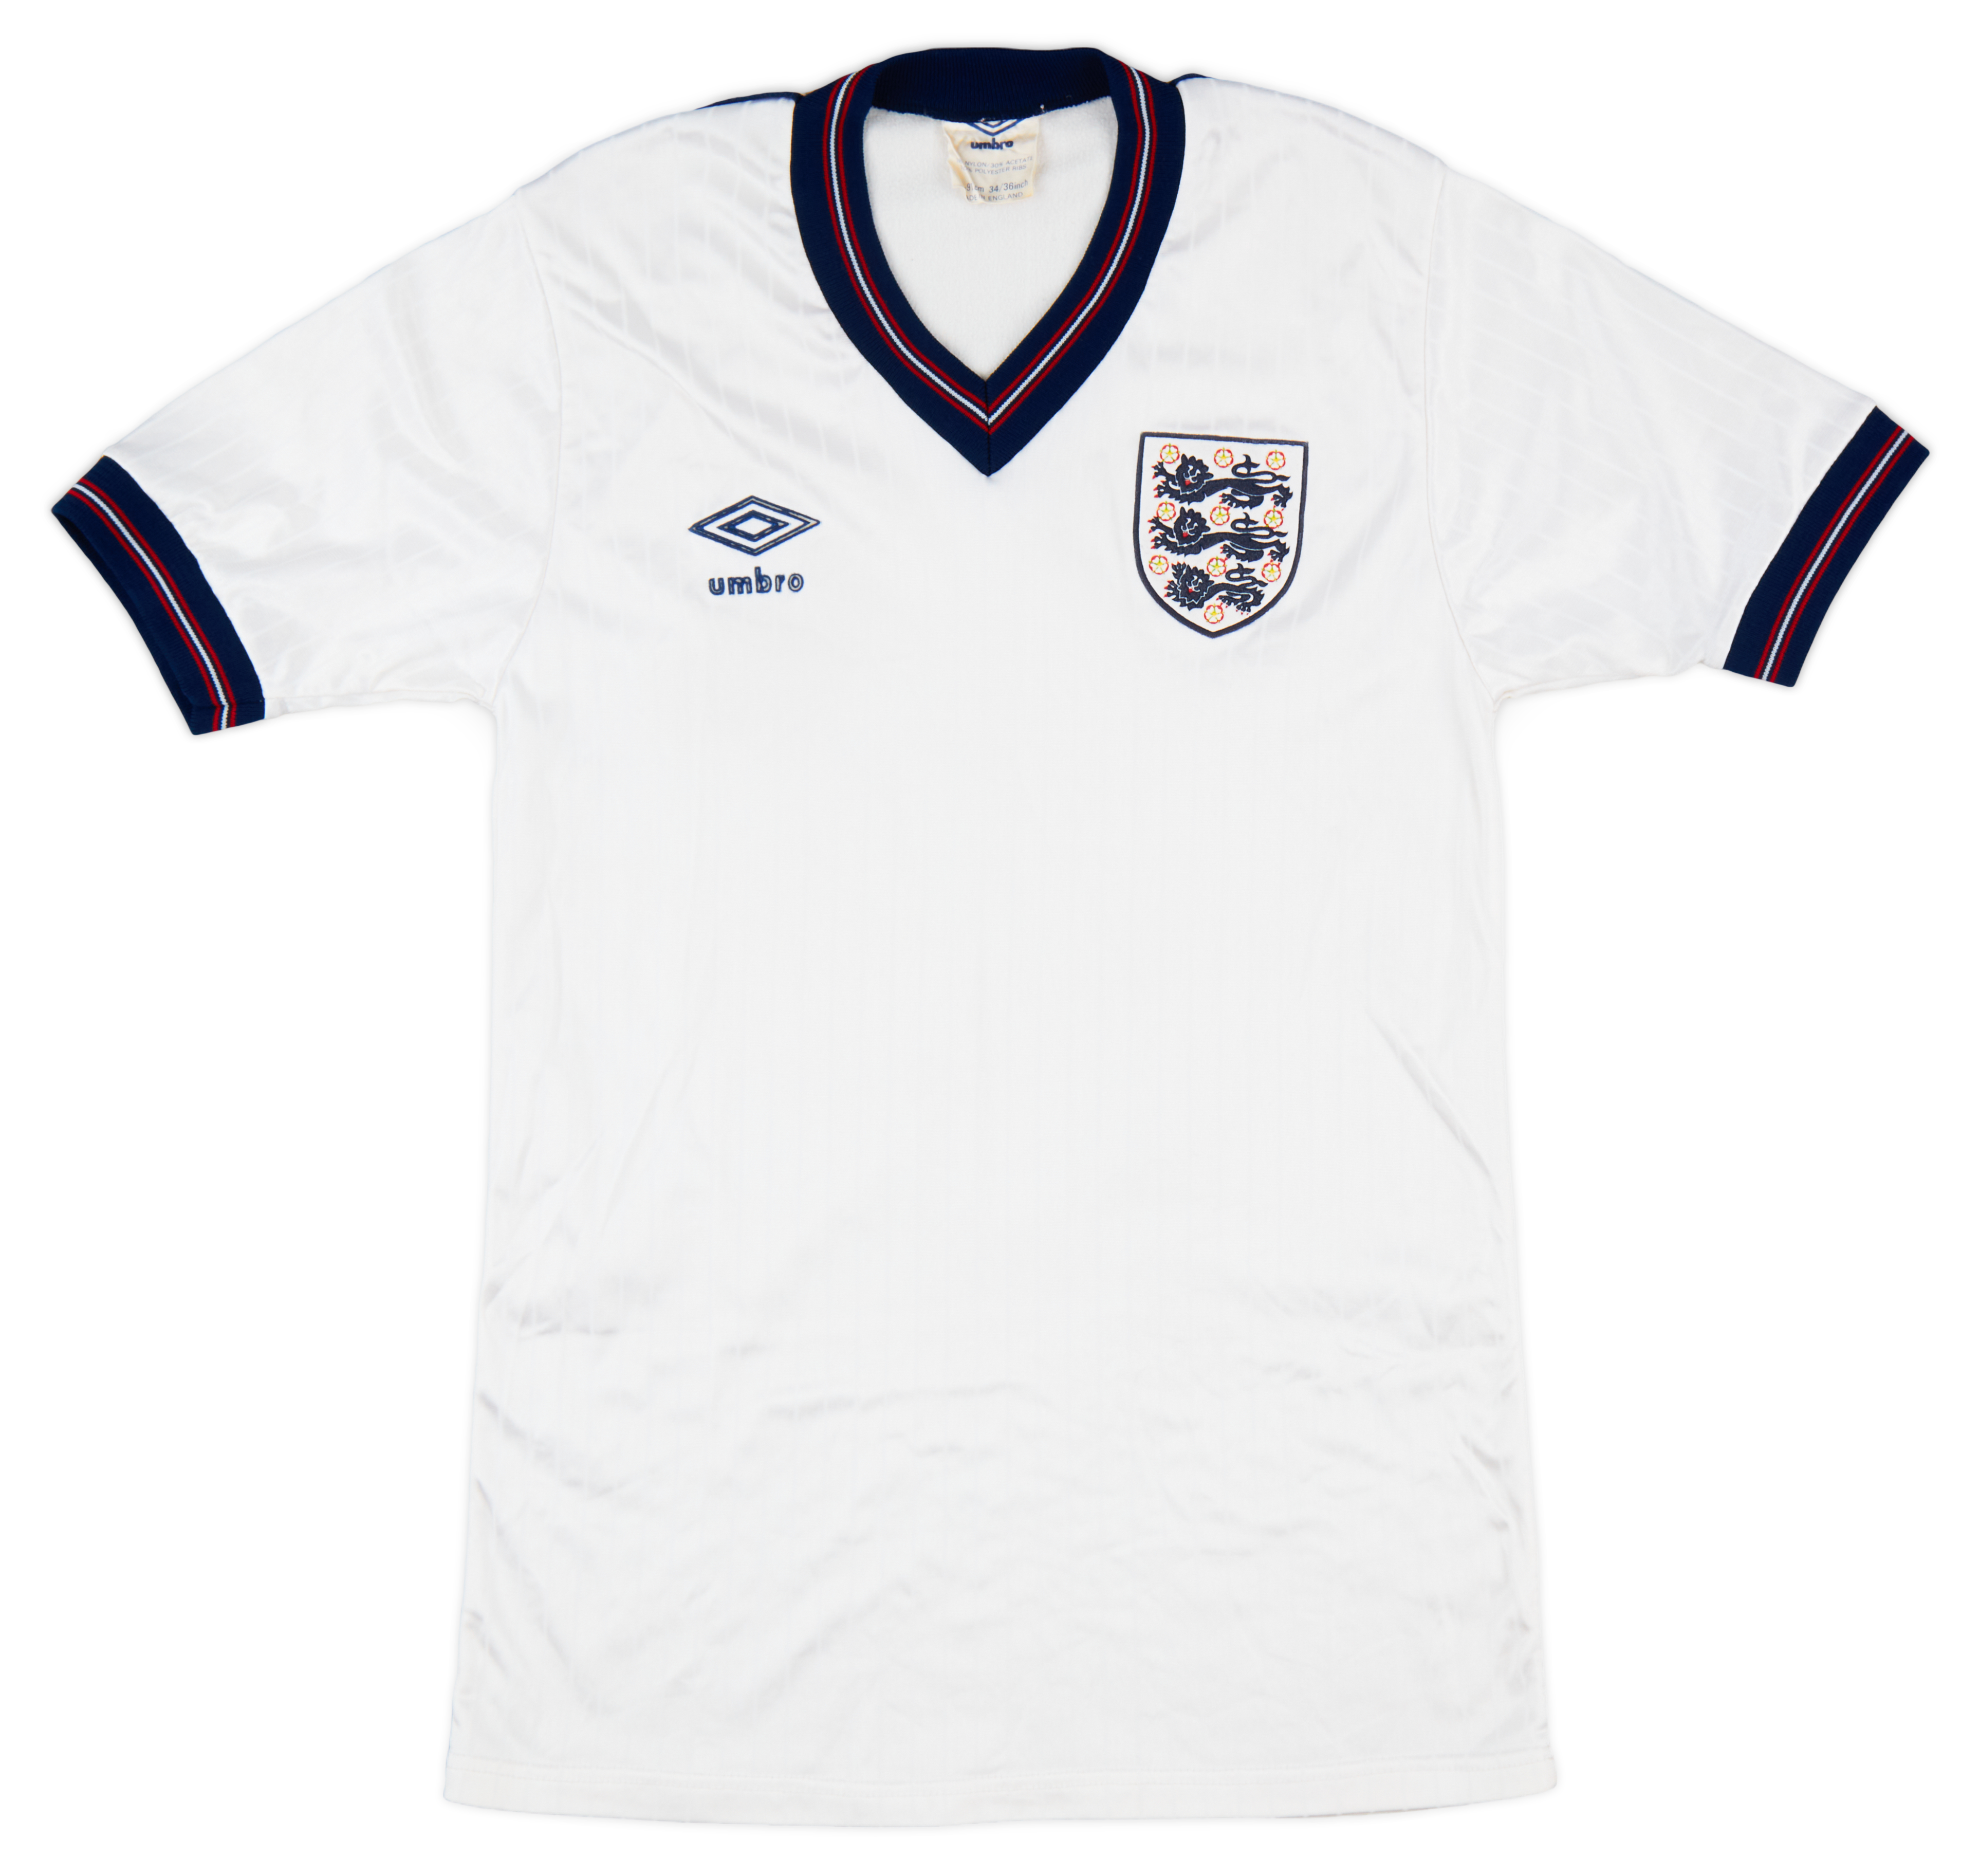 1986 England Home Shirt - 6/10 - ()